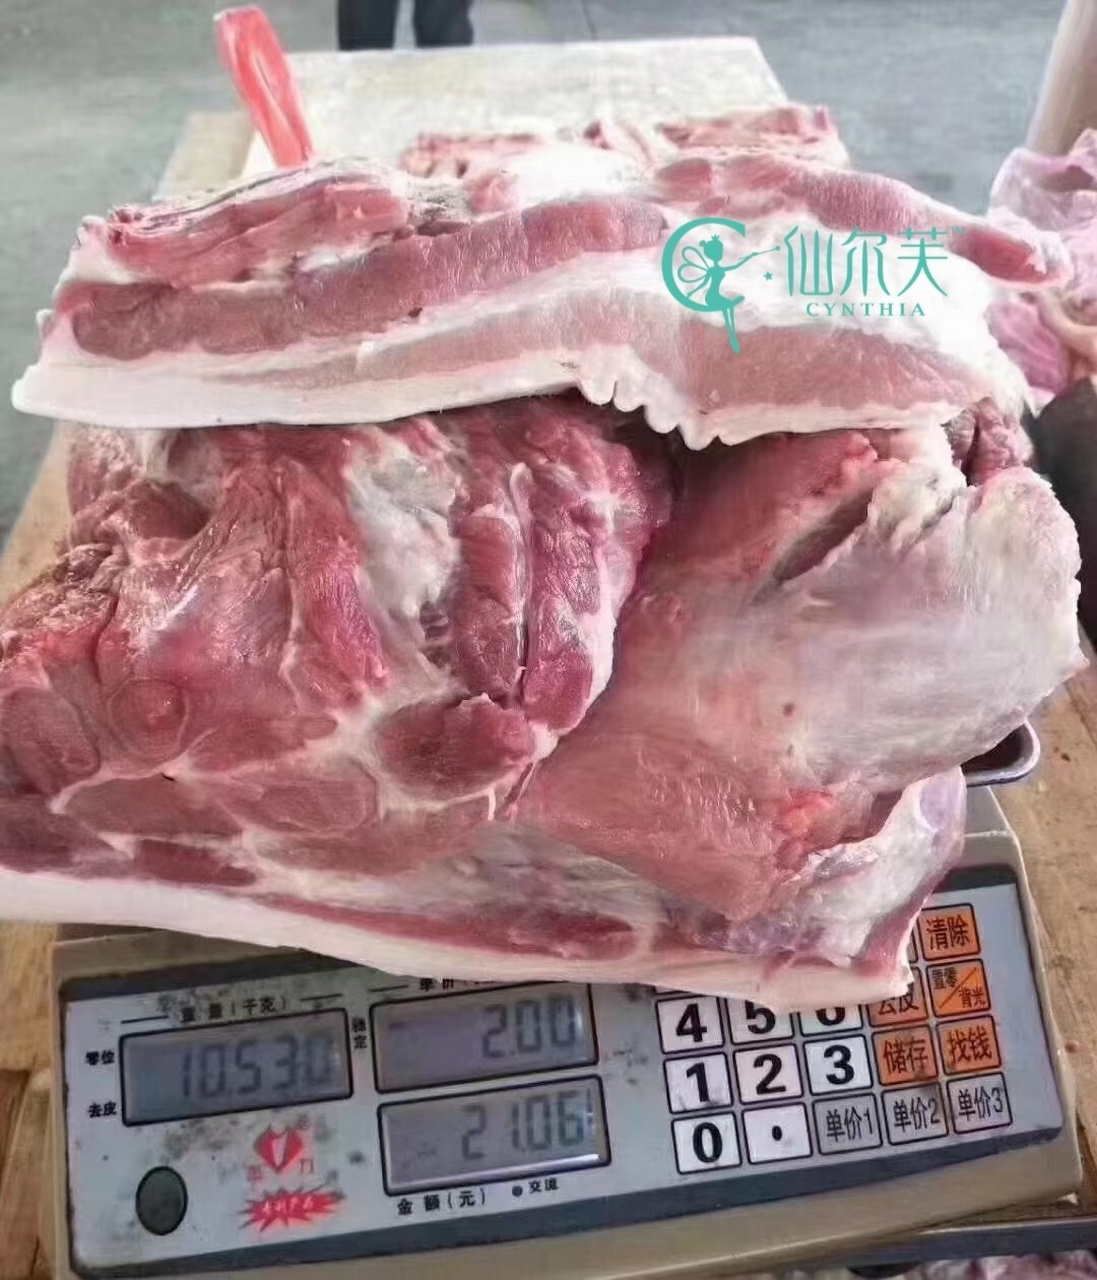 二十斤猪肉 20斤图片